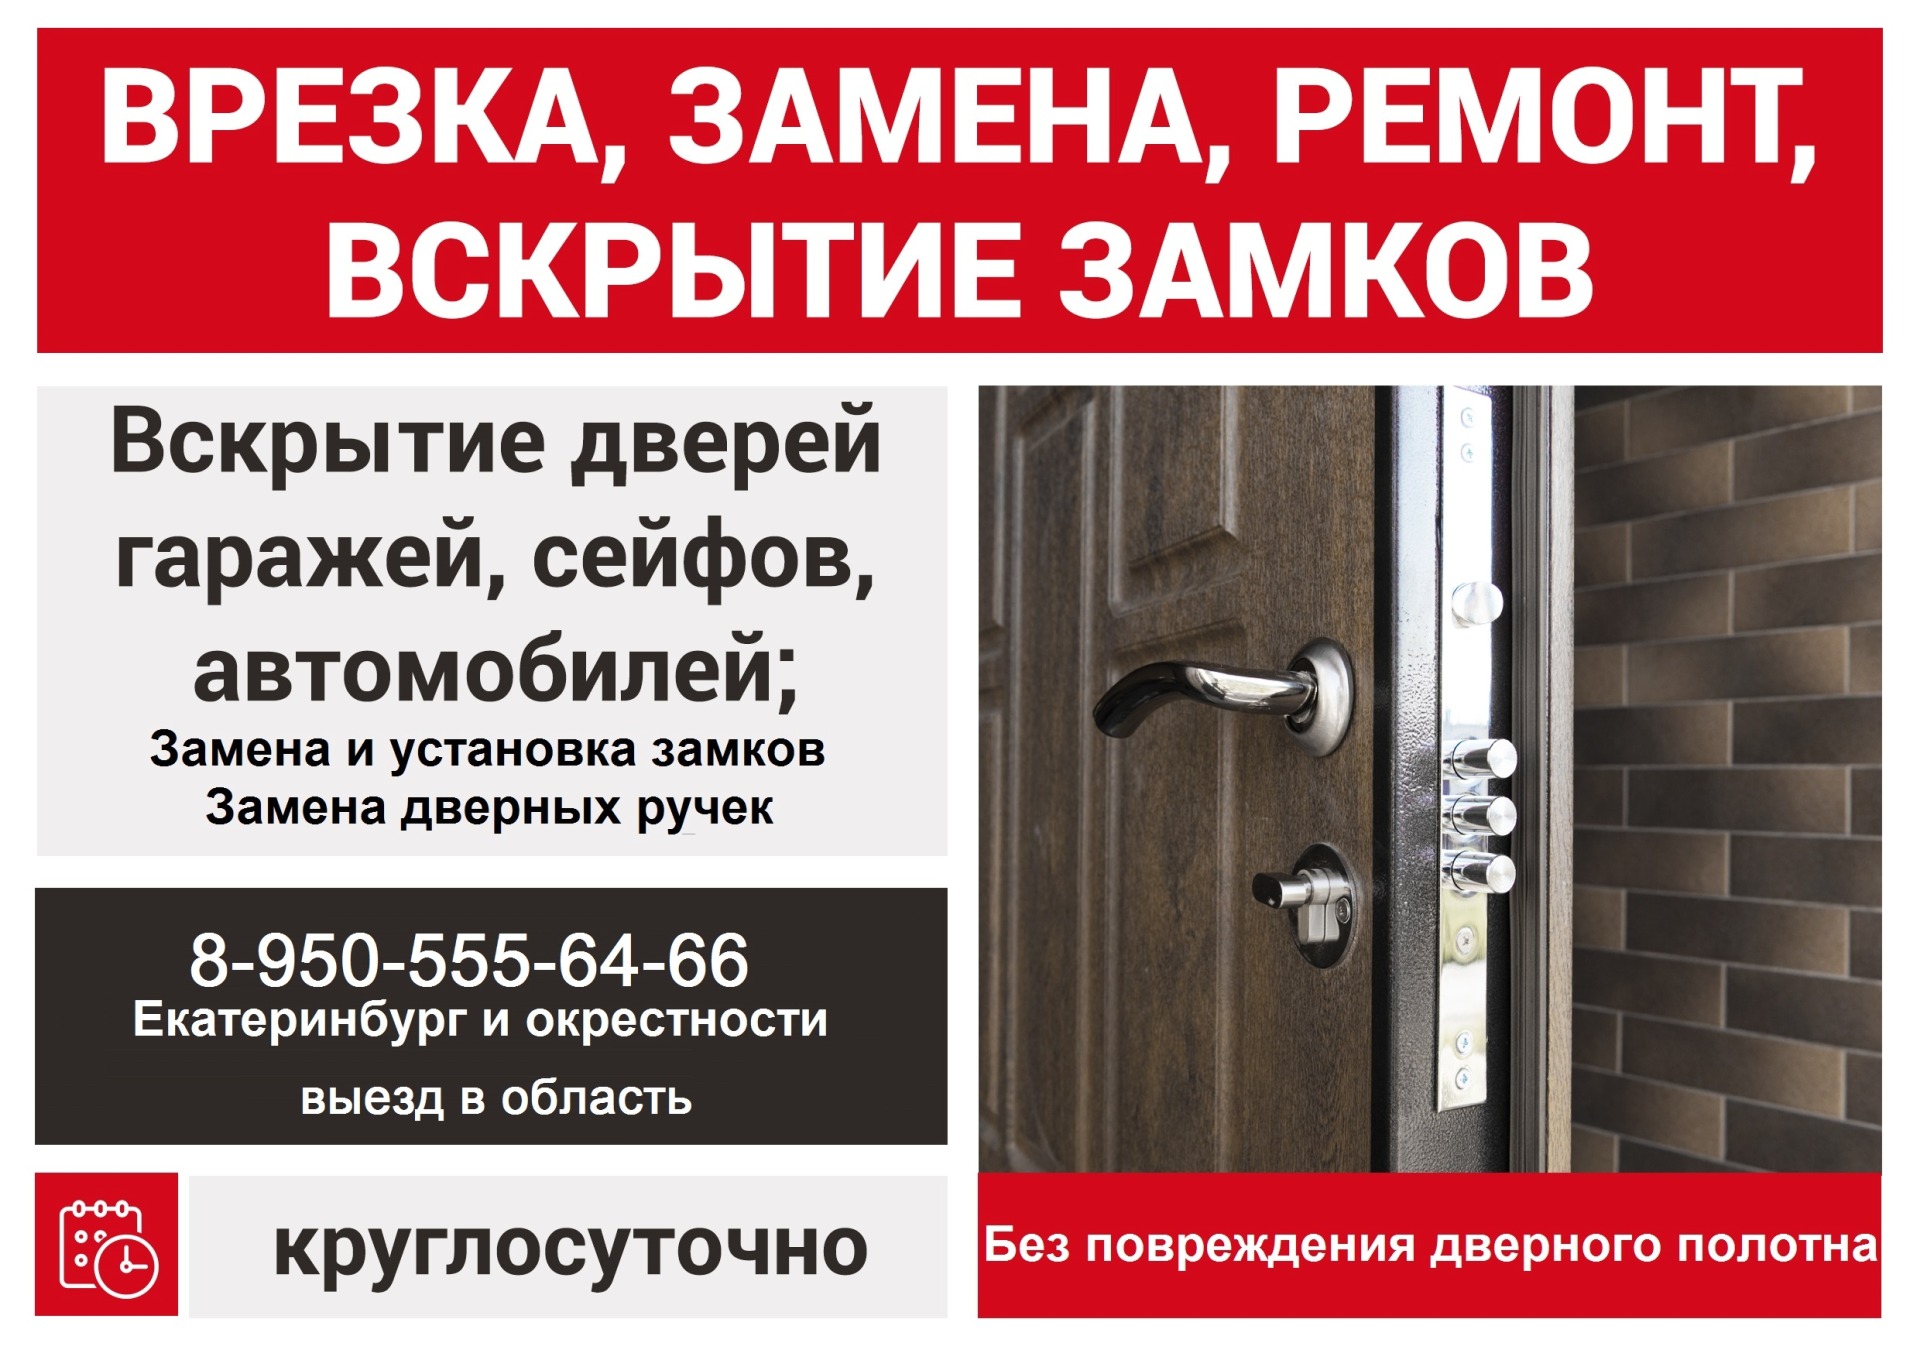 Вскрытие дверей в Екатеринбурге и Свердловской области